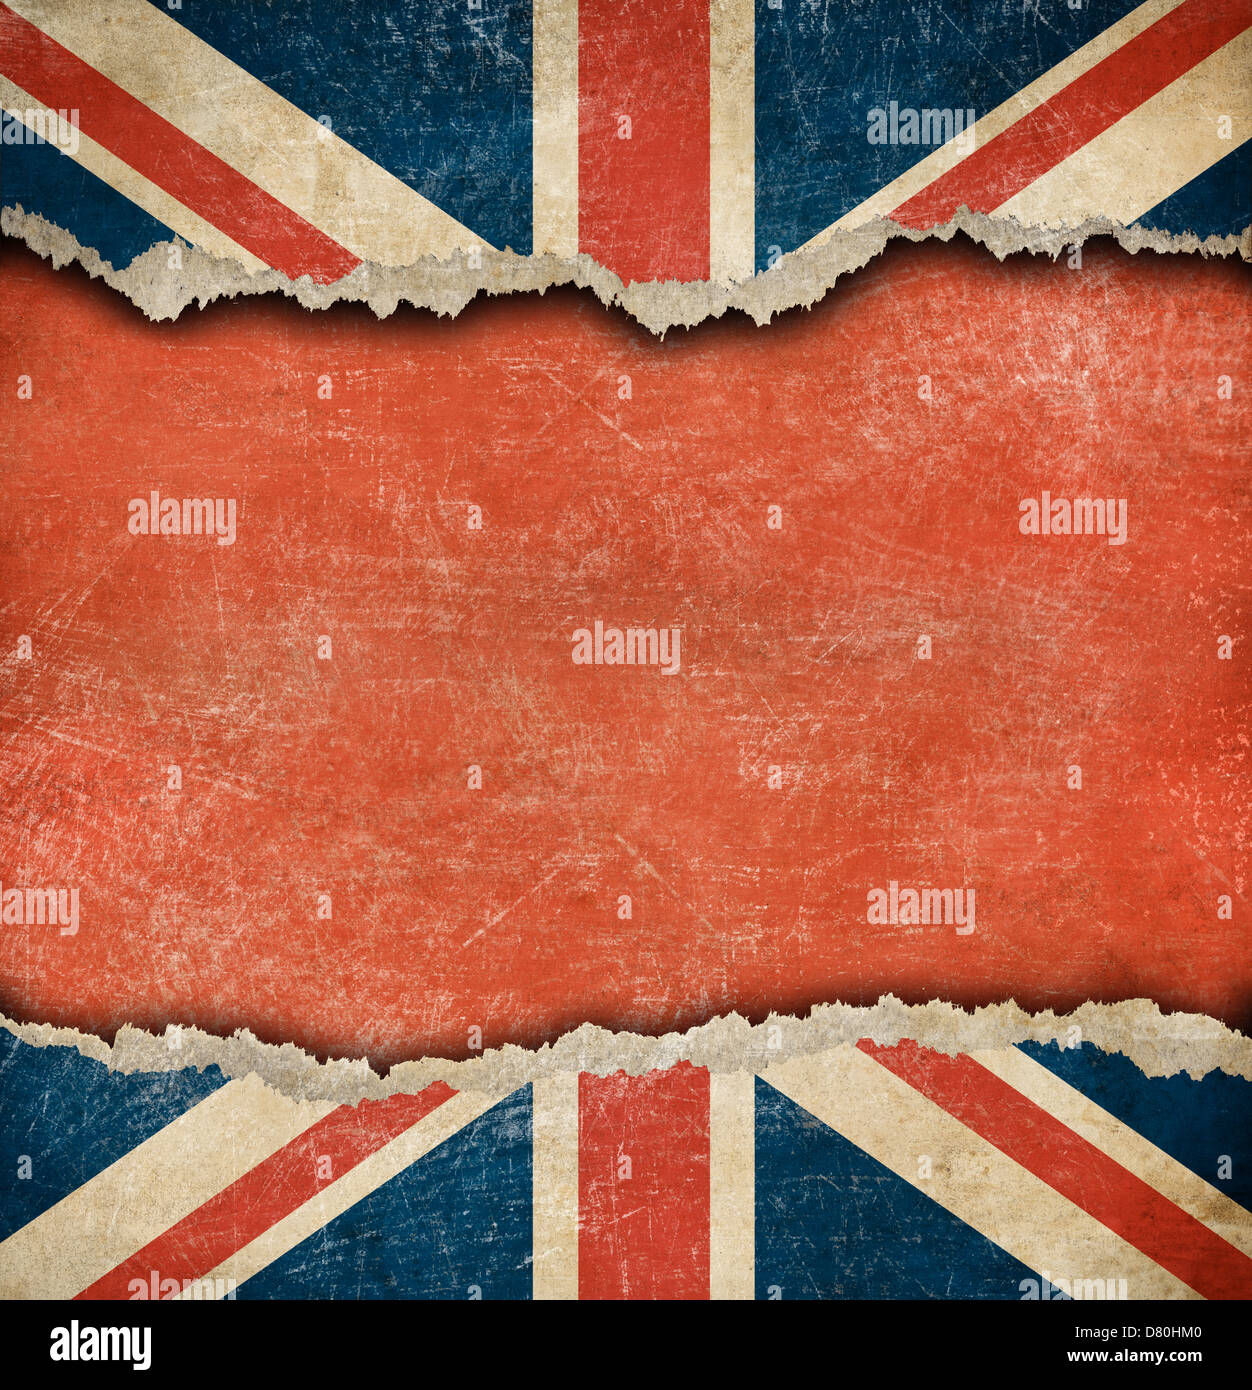 Grunge bandiera britannica sulla carta strappata con grande spazio vuoto Foto Stock